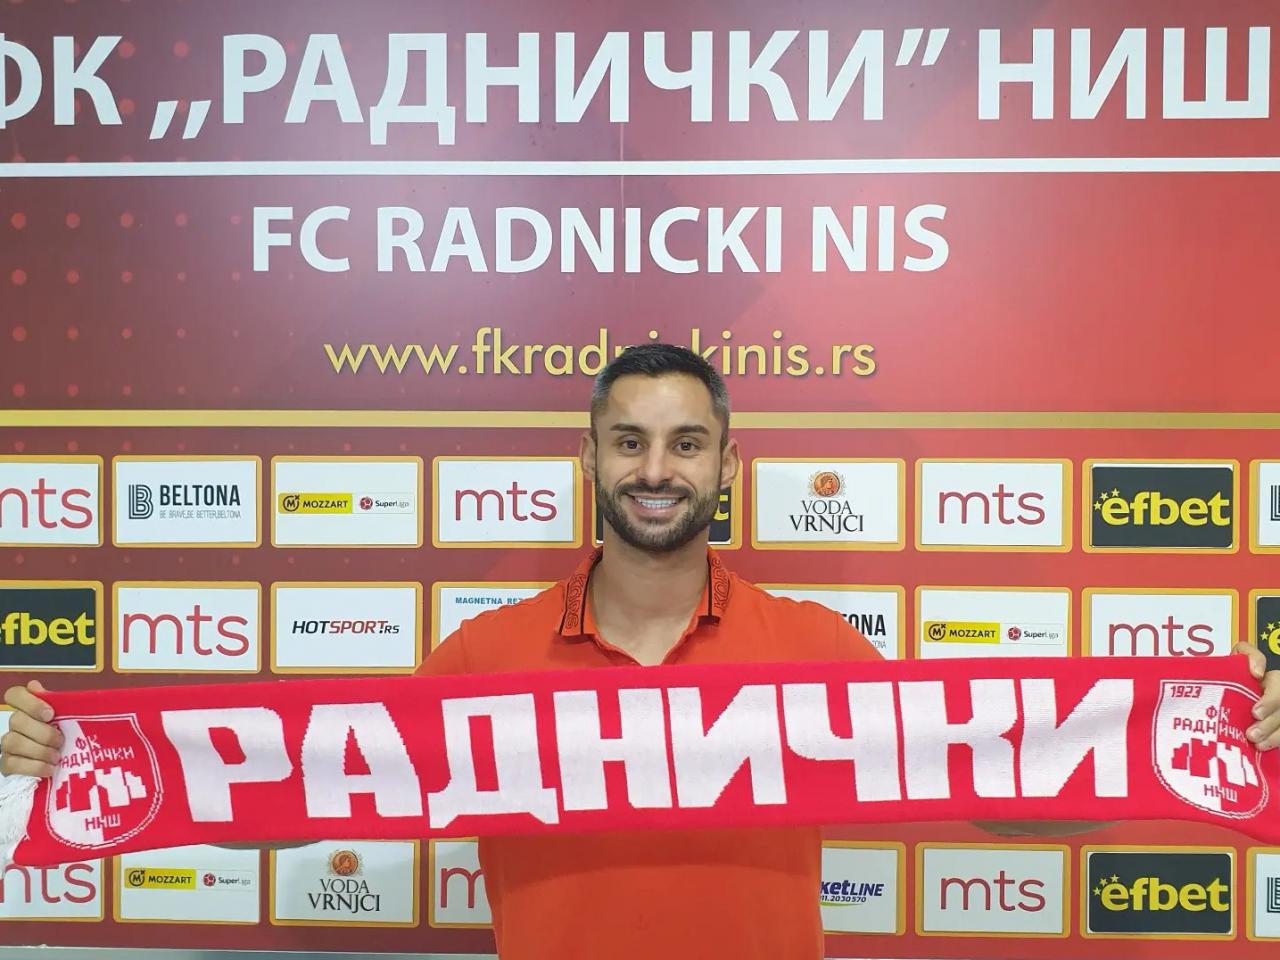 Pojačanje u Nišu: Srpski Švajcarac potpisao za Radnički - Sportklub